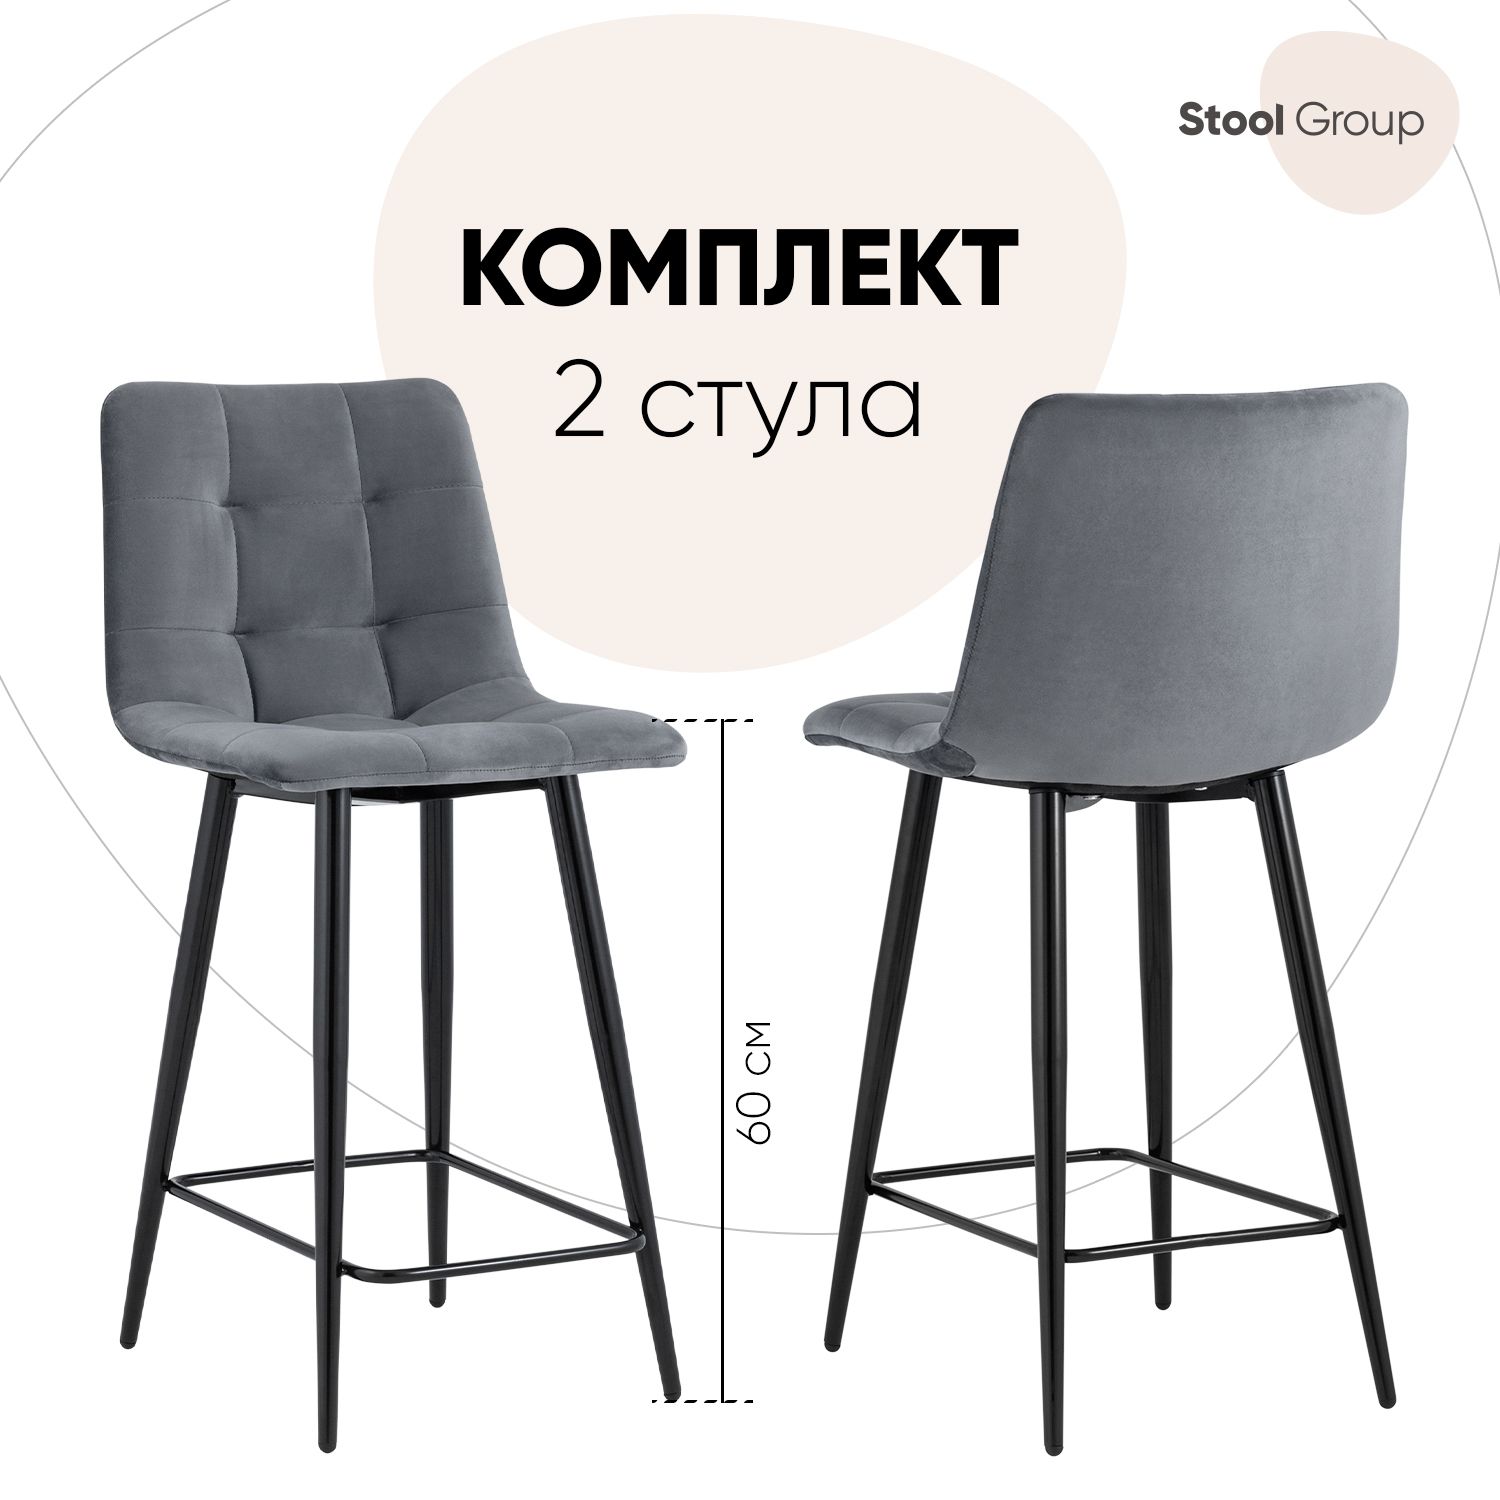 Комплект полубарных стульев 2 шт. Stool Group Джанго vd-django-b27, тёмно-серый/черный - купить в Stool Group (Со склада Мегамаркет Вешки), цена на Мегамаркет